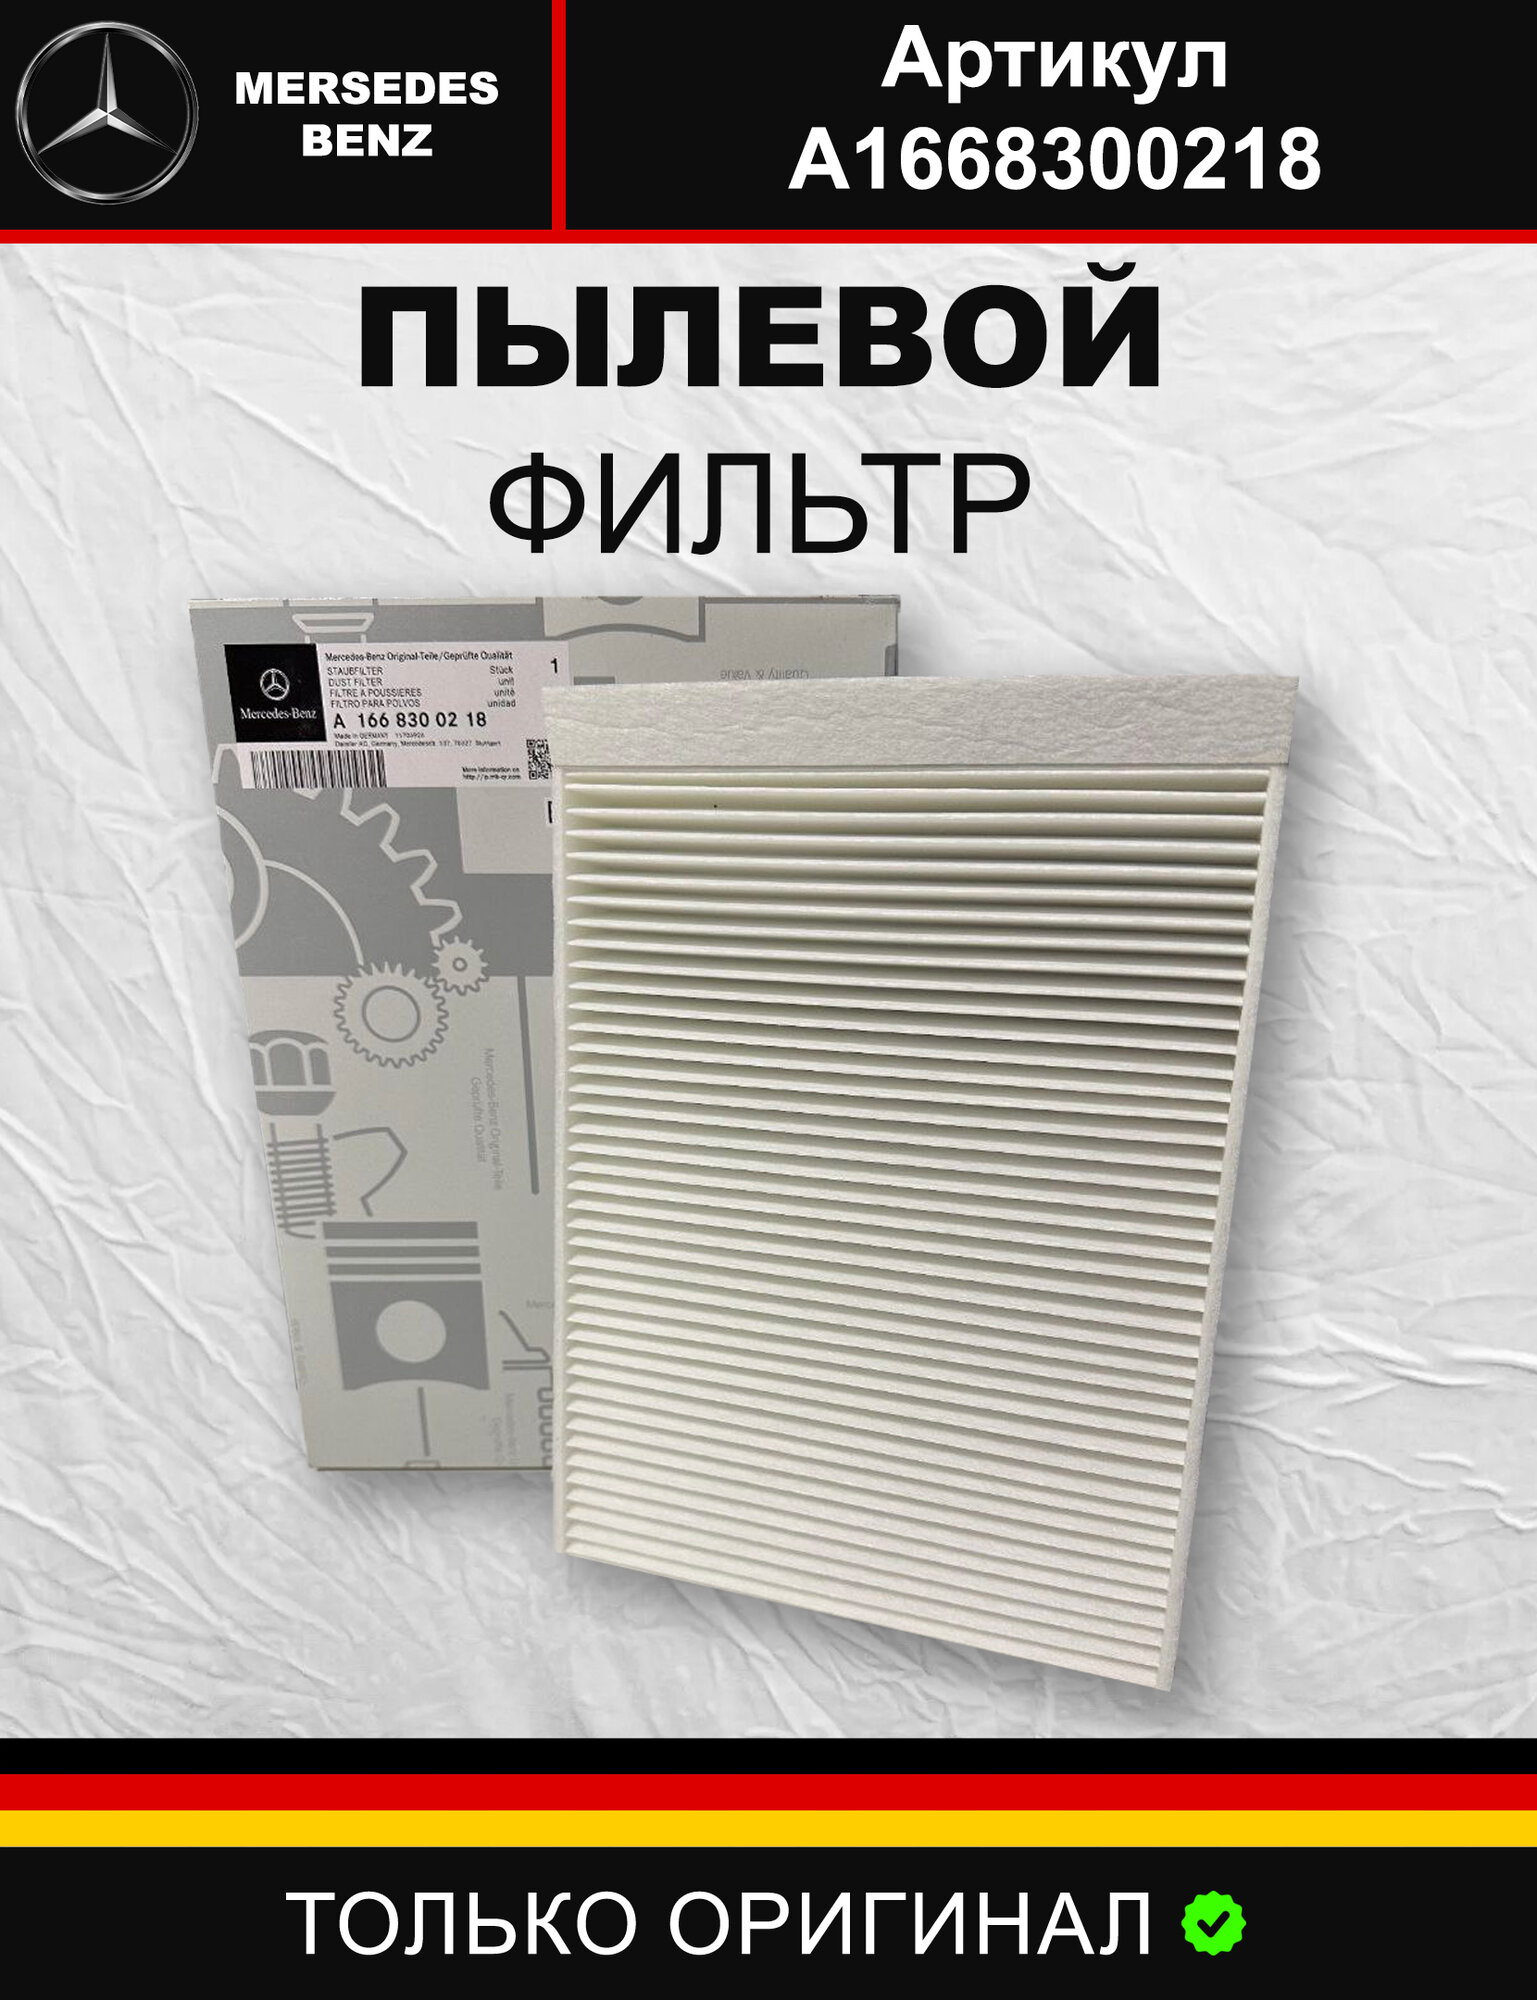 Пылевой фильтр для Mercedes-Benz A1668300218